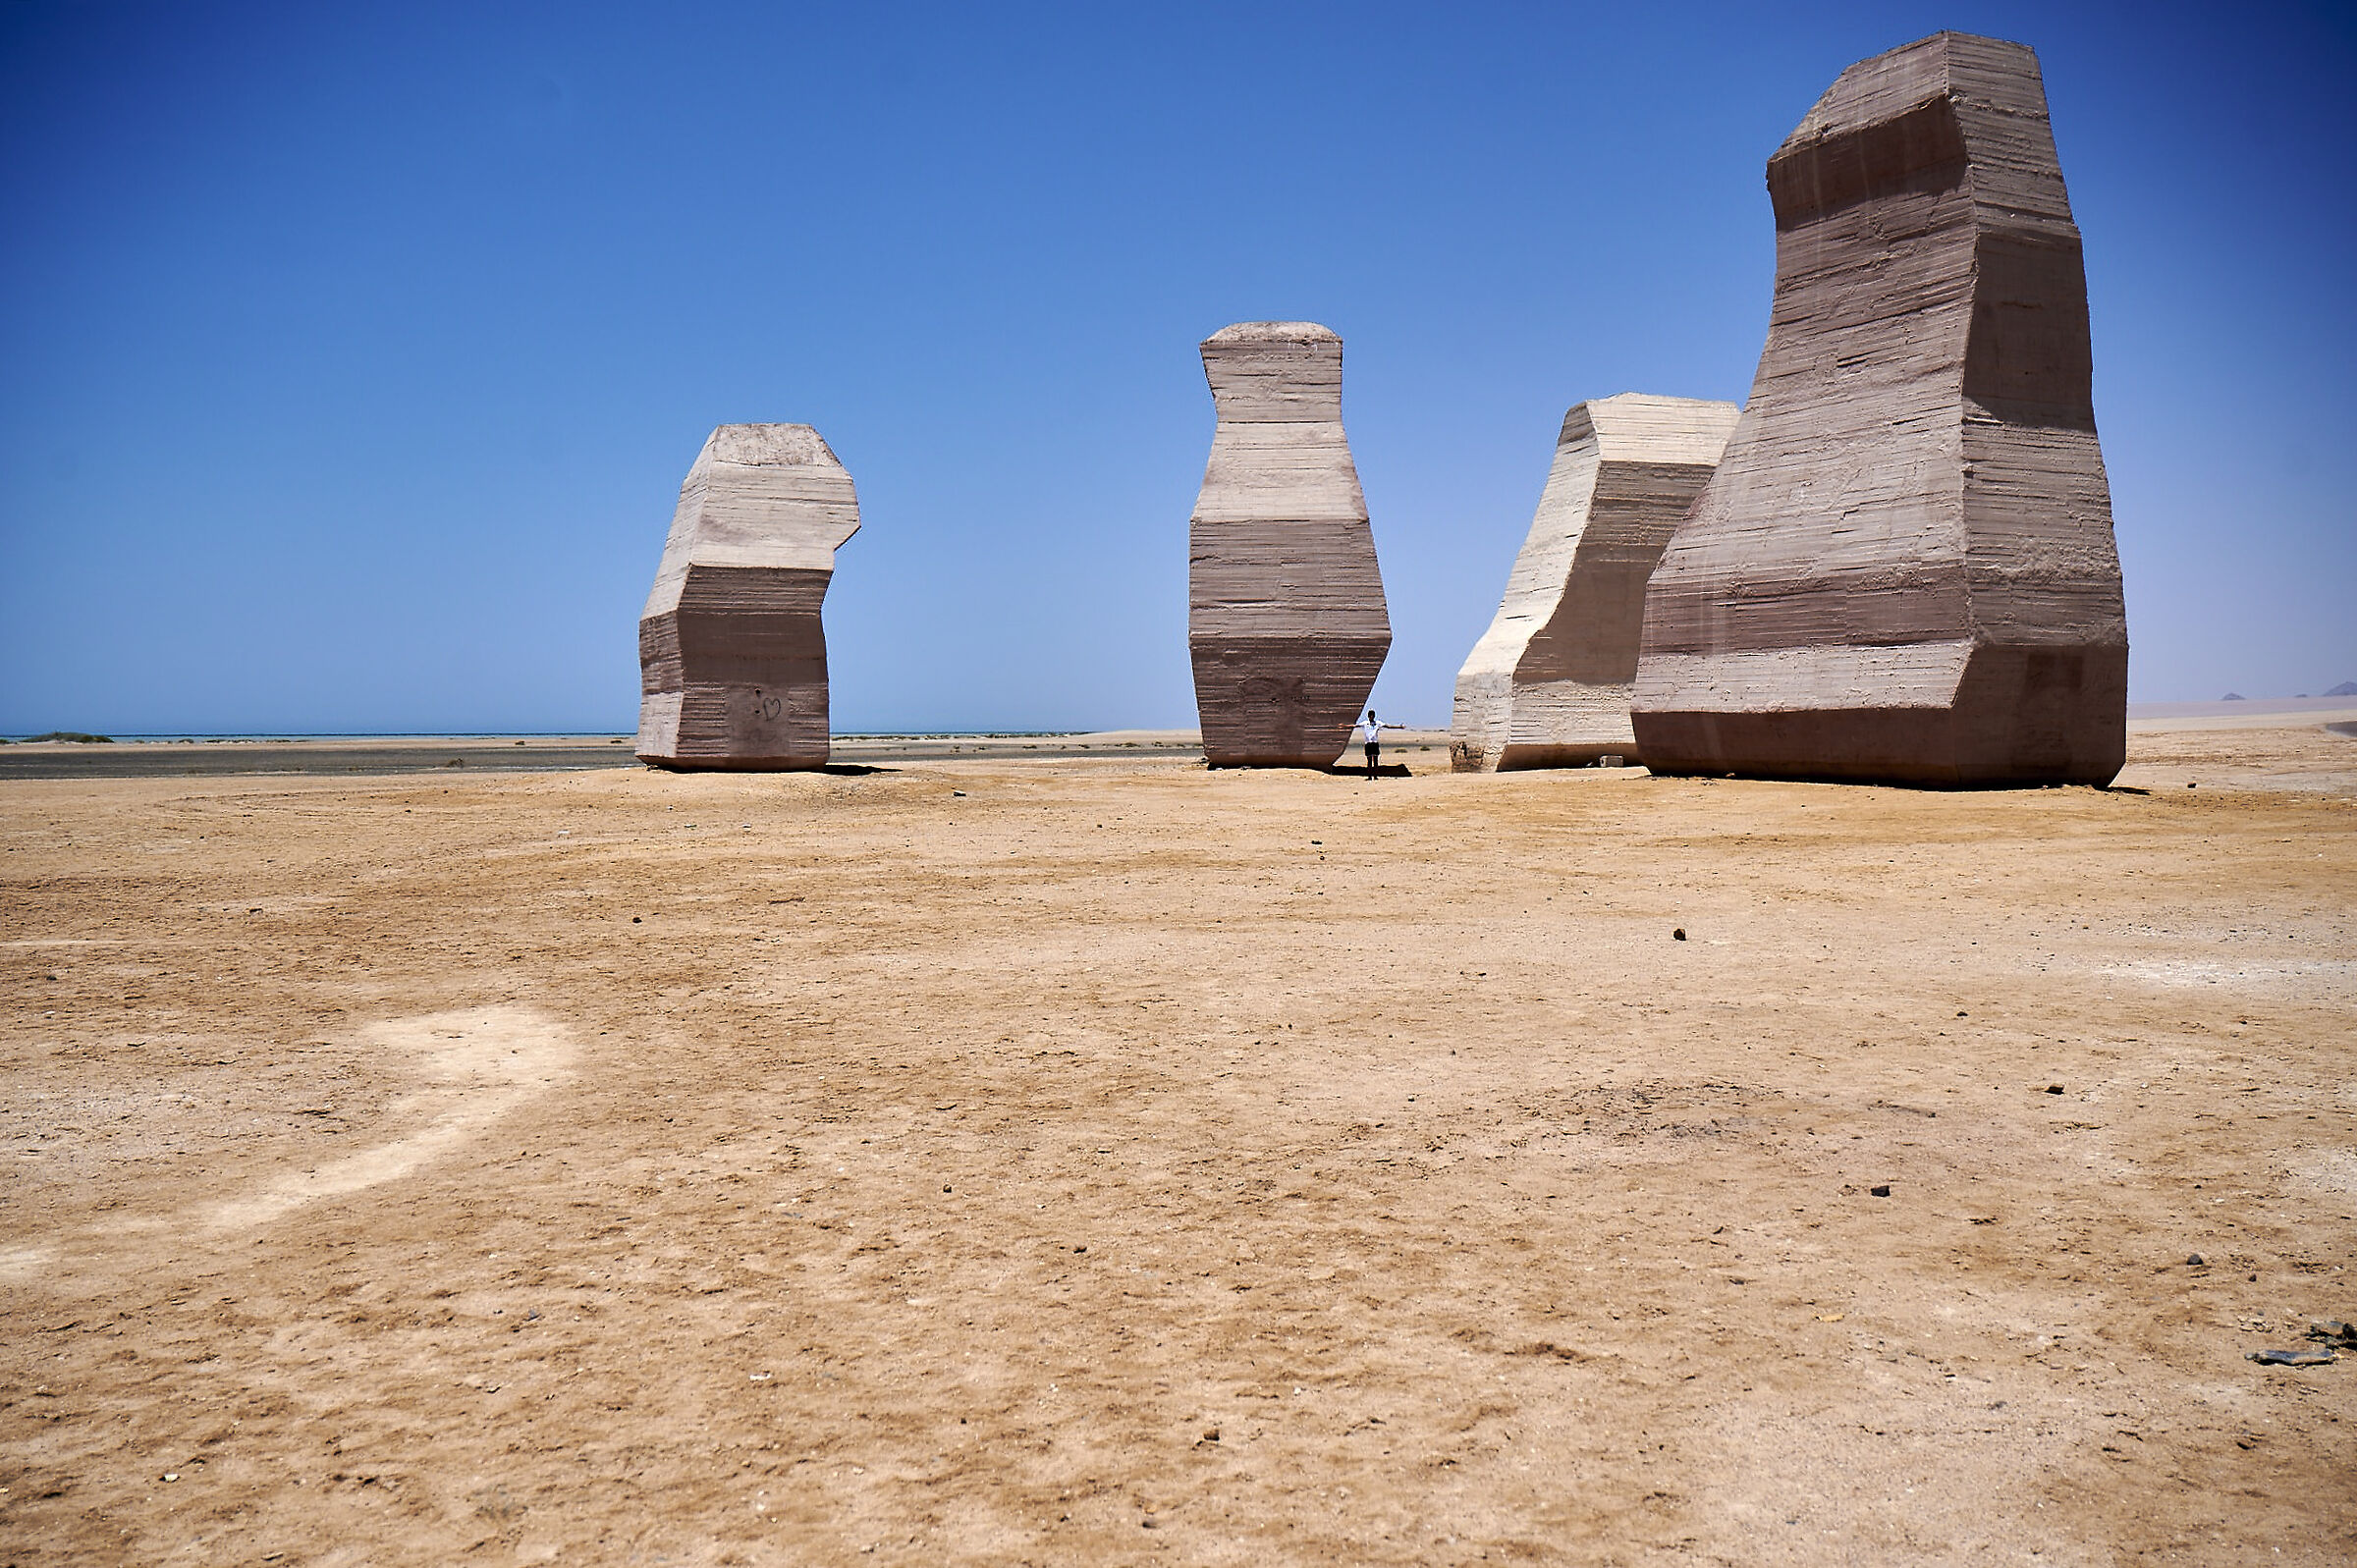 Monument in the desert...